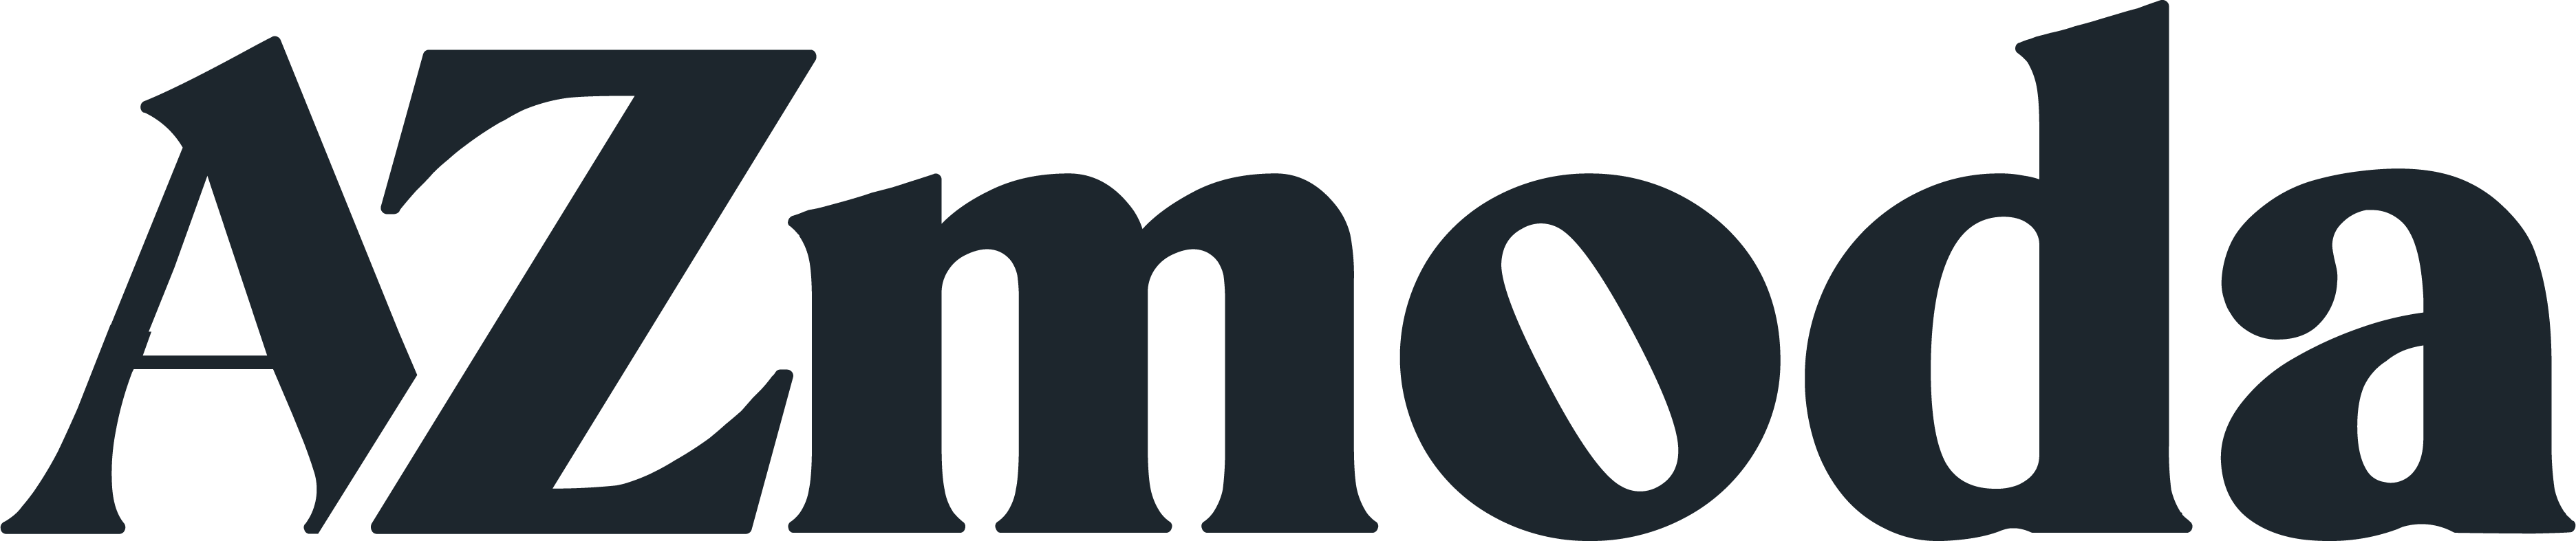 AZmoda-logo